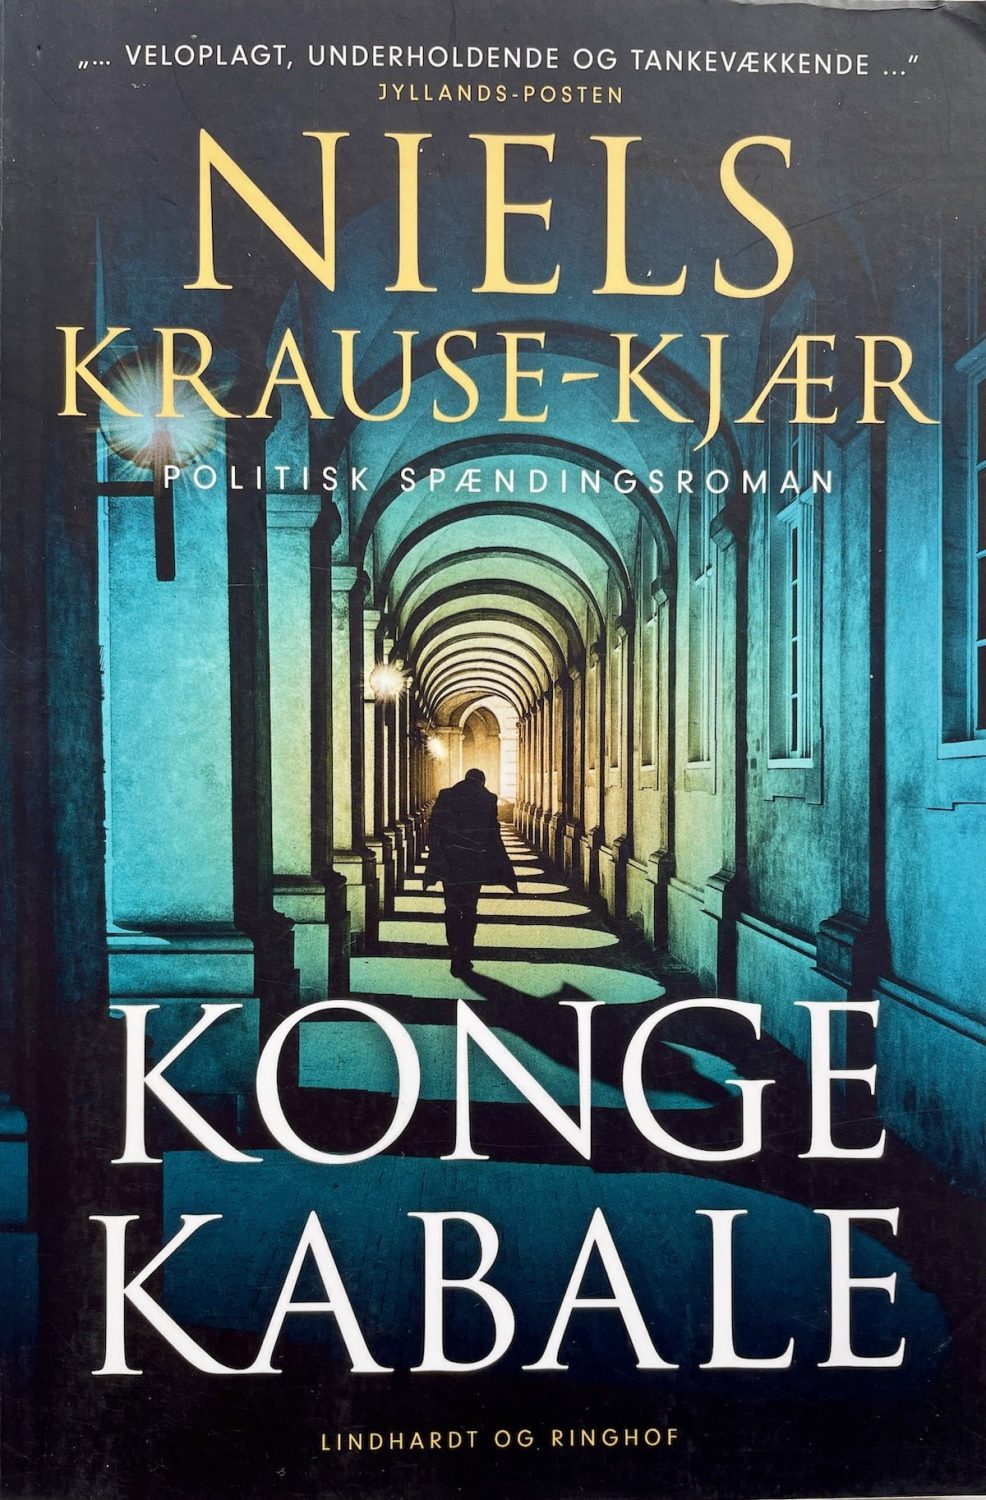 Kongekabale, Niels Krause-Kjær, brugt bog